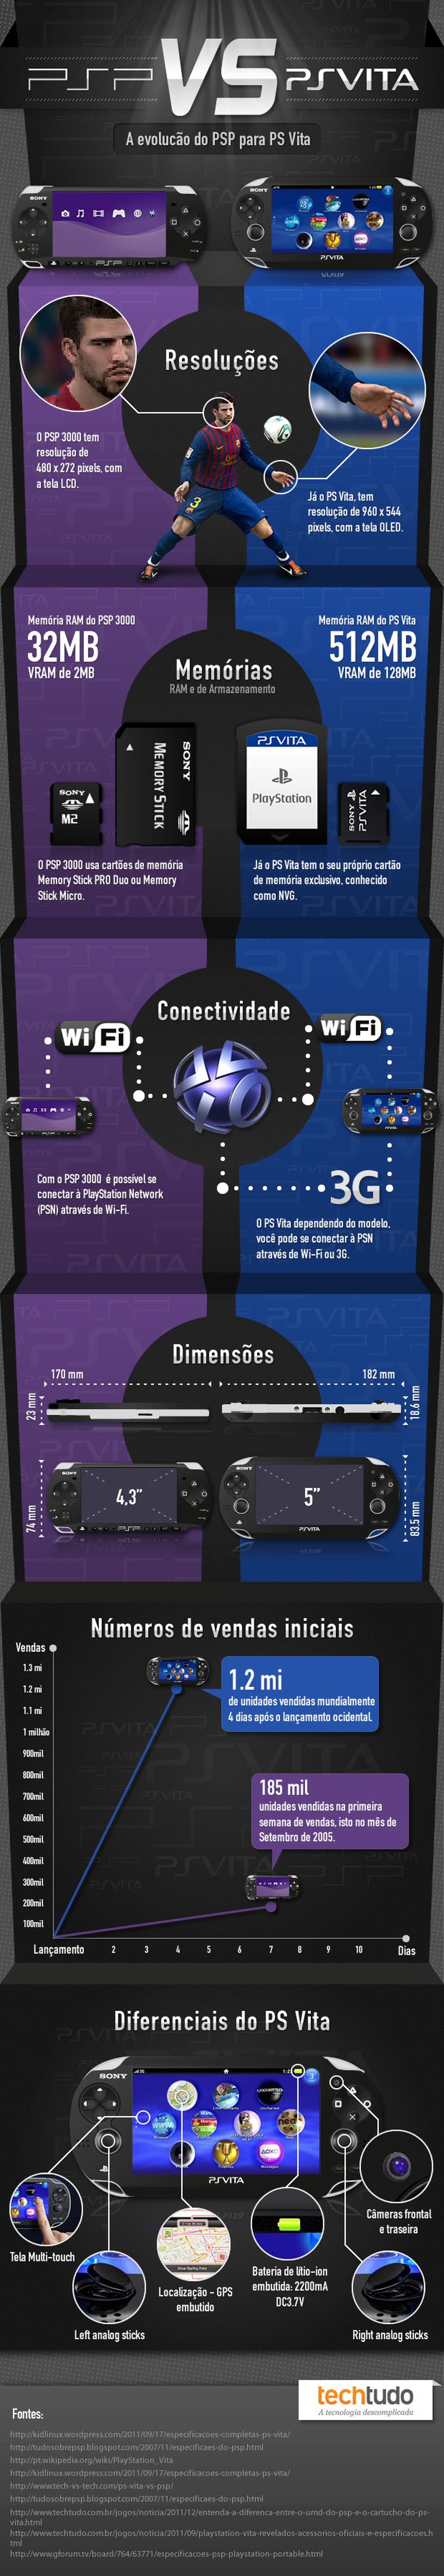 Entenda a diferença entre o UMD do PSP e o cartucho do PS Vita